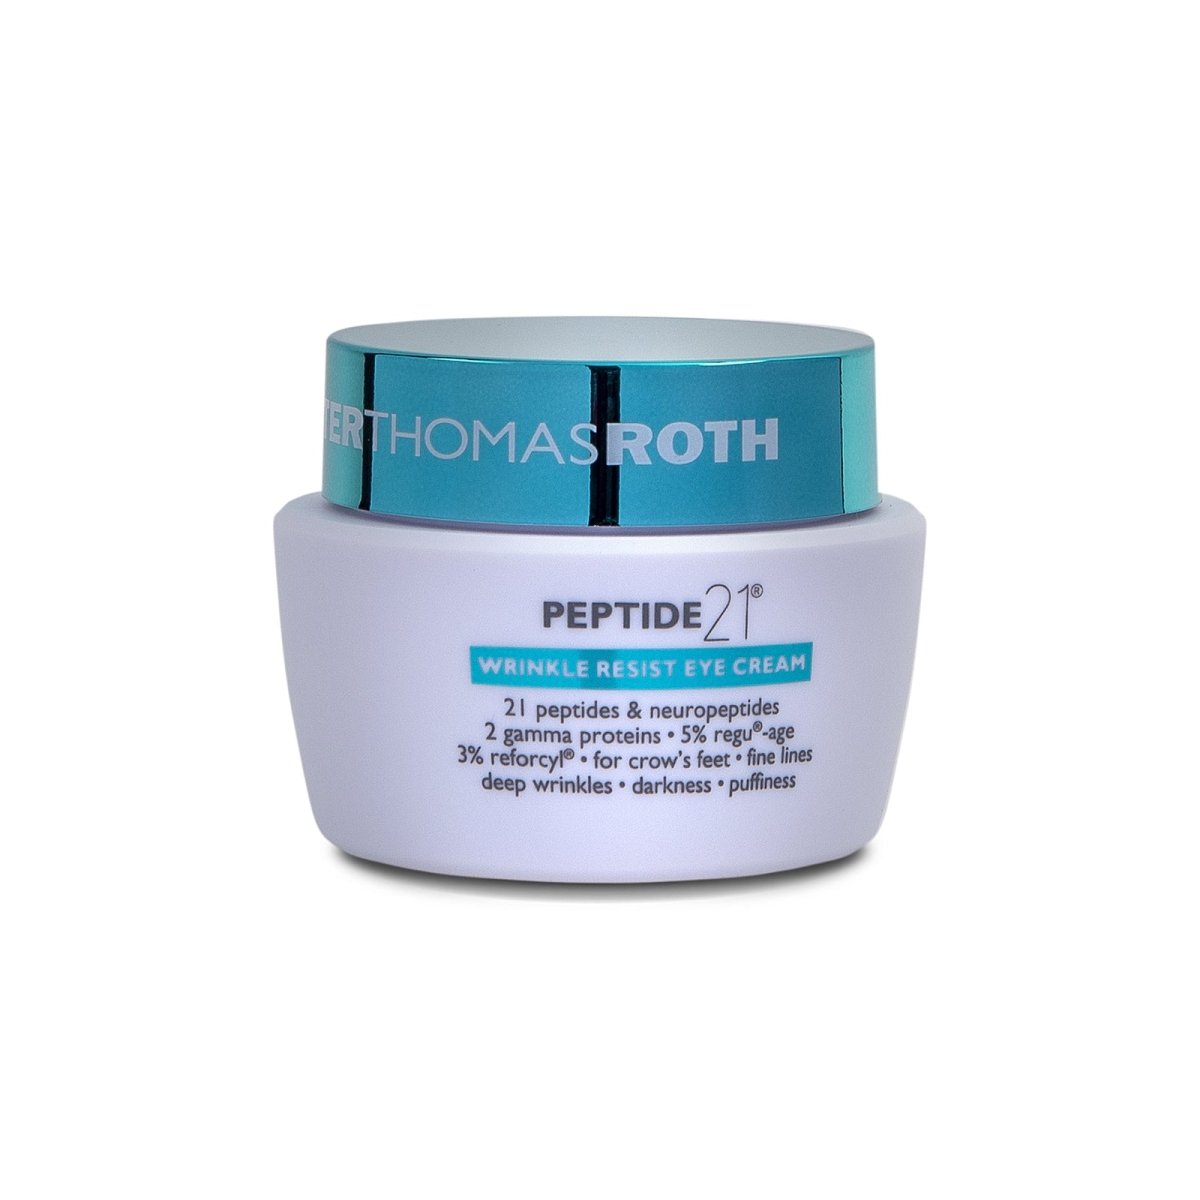 Peter Thomas Roth Peptide 21™ Wrinkle Resist Eye Cream - SkincareEssentials